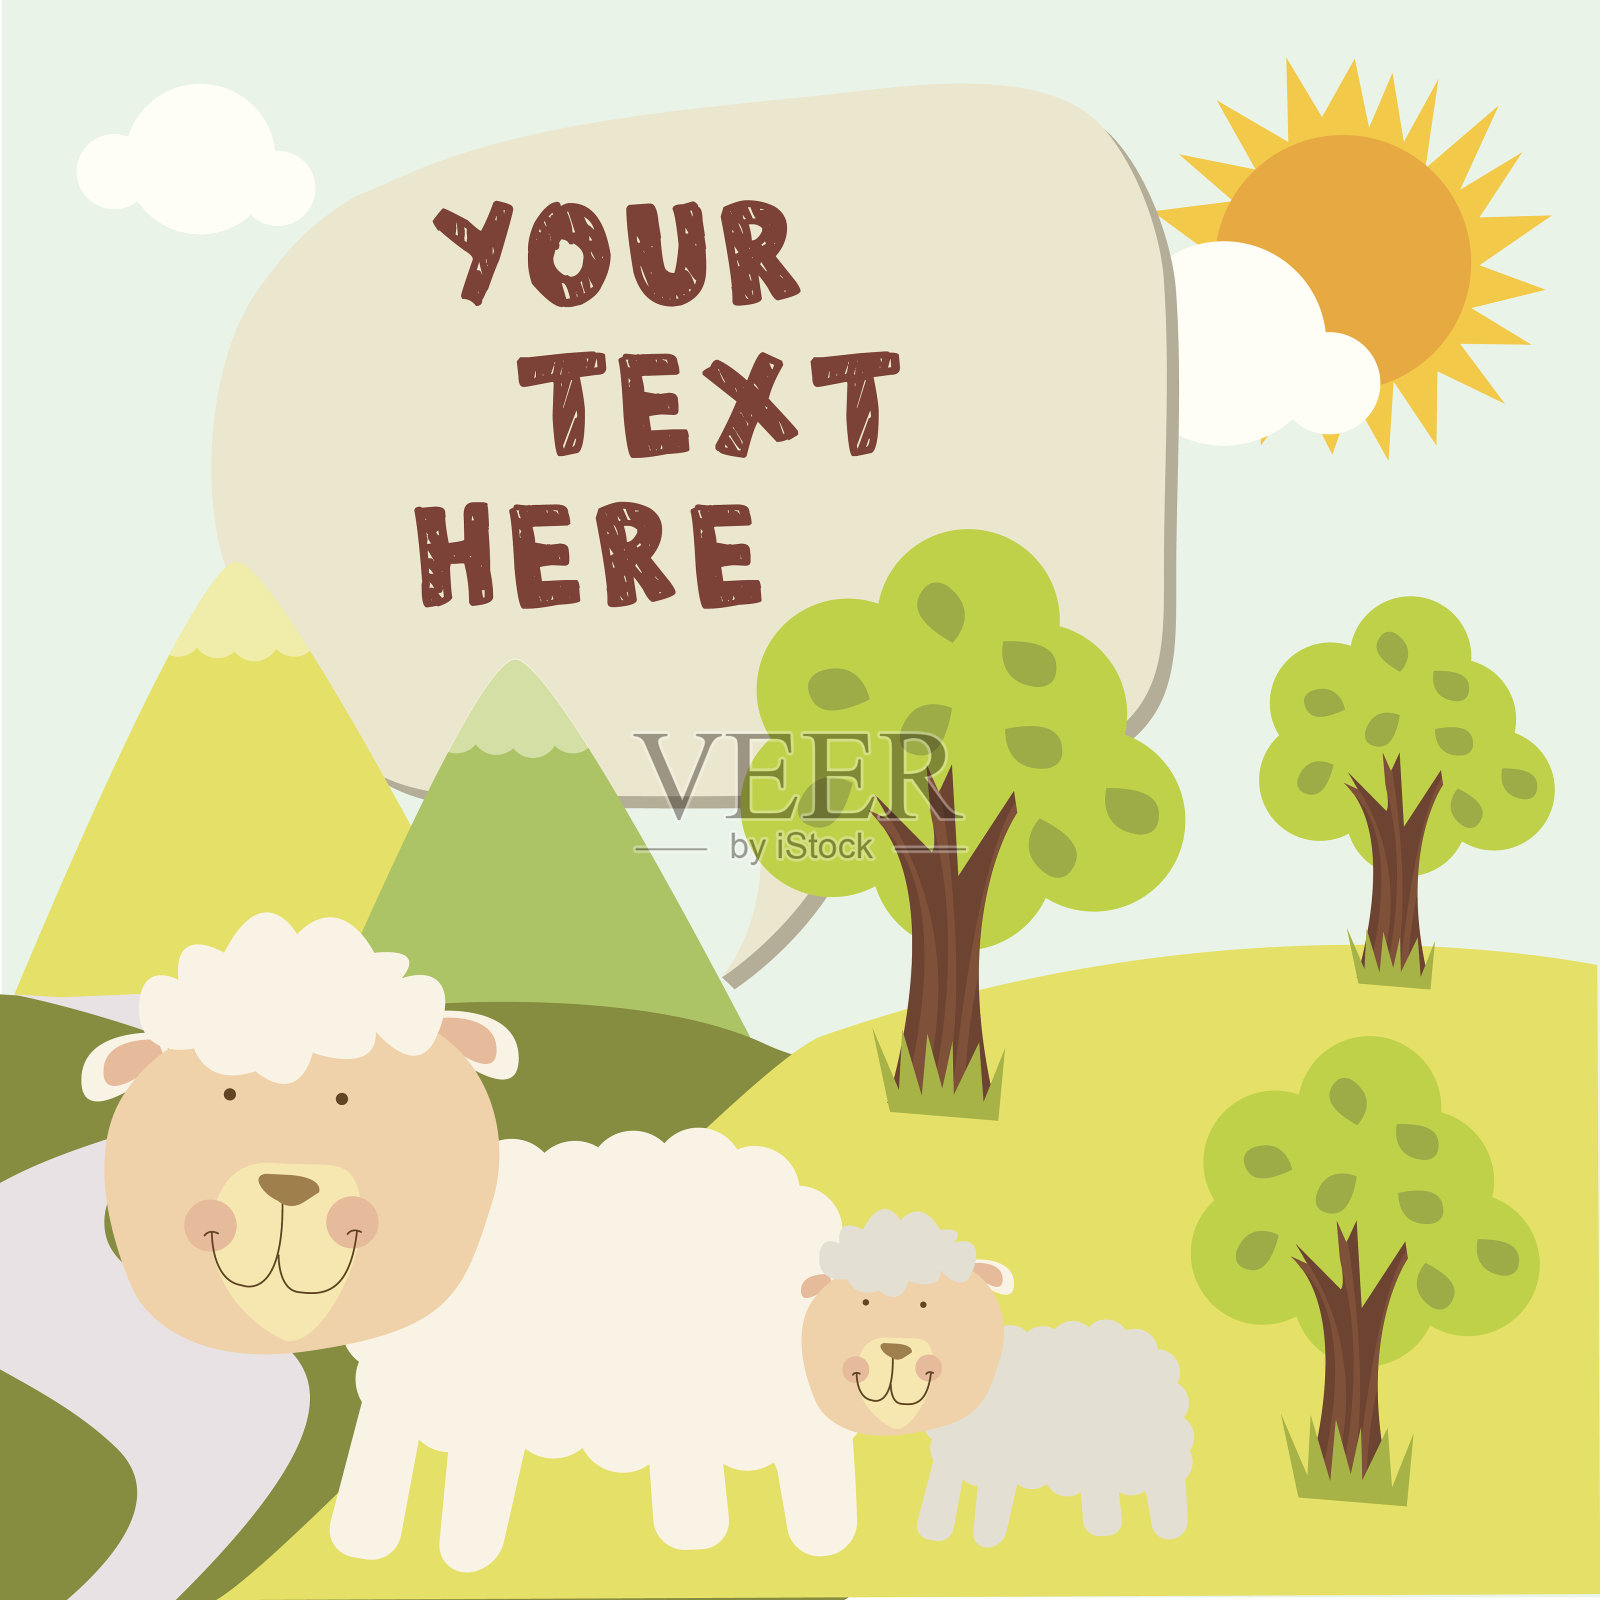 可爱的绵羊和儿子在森林与信息框插画图片素材